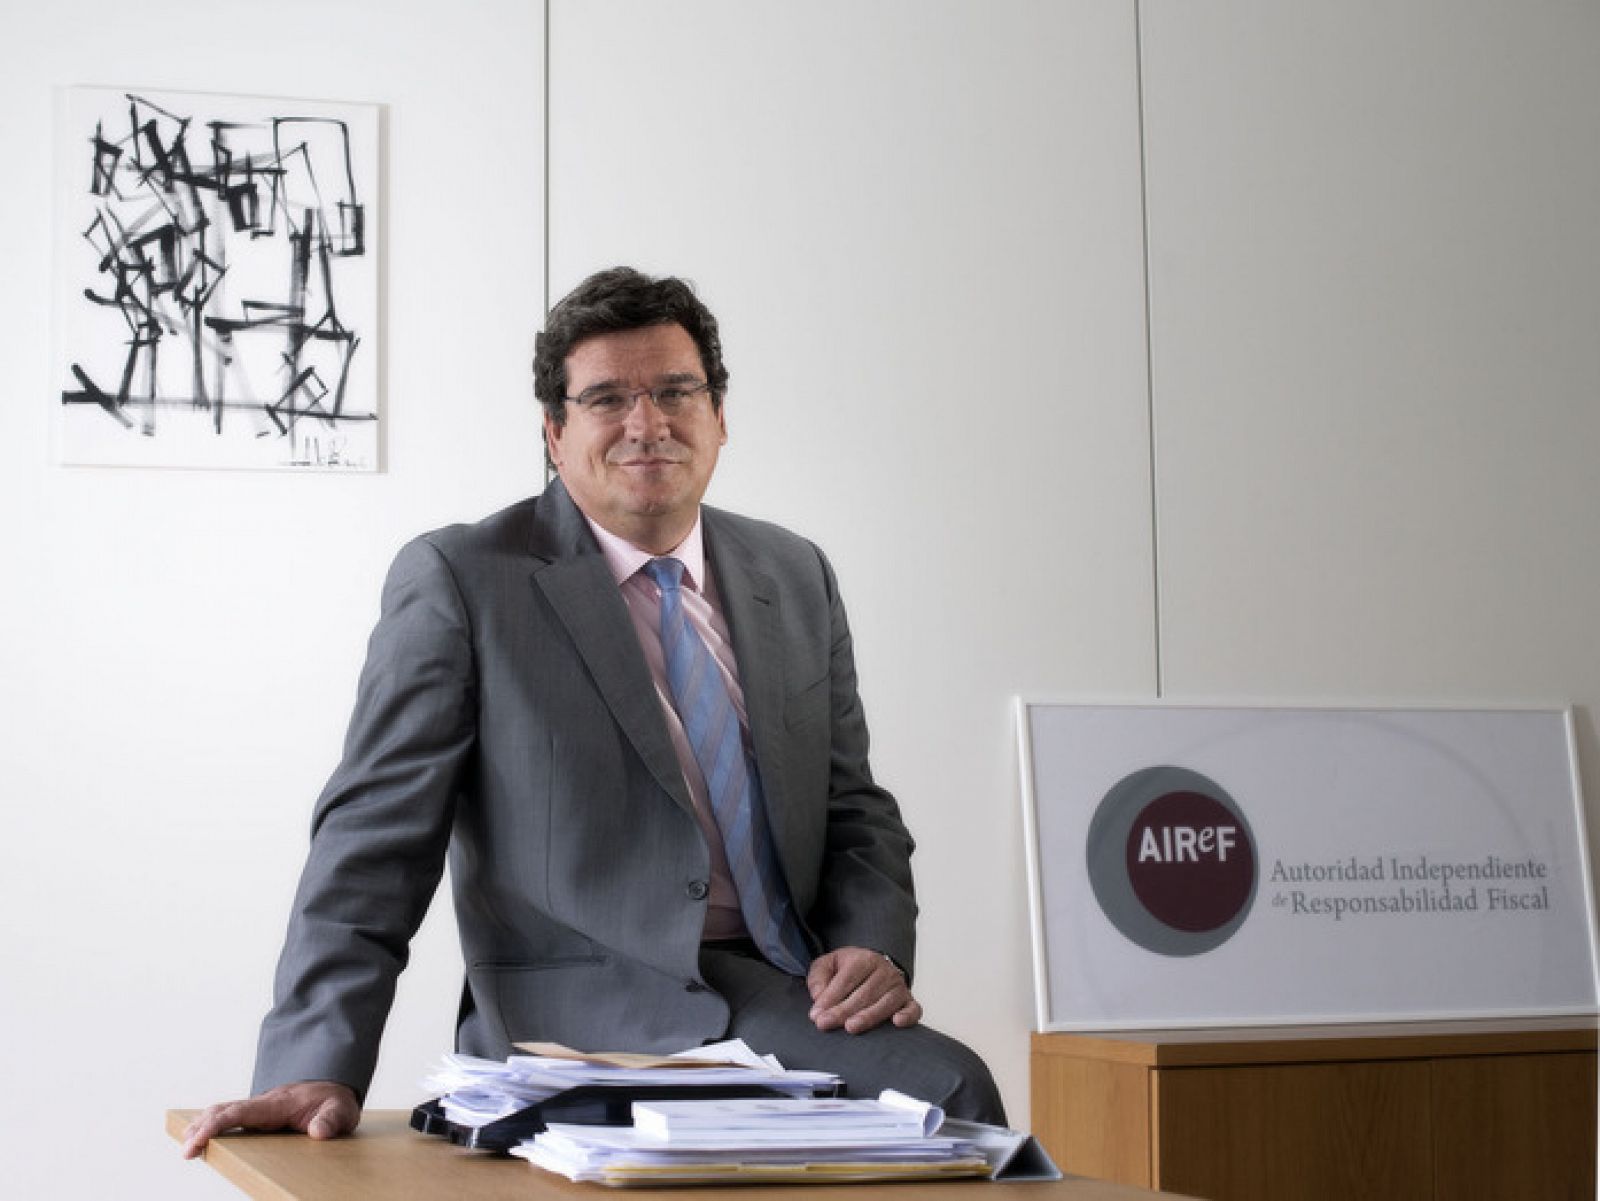 El presidente de la autoridad fiscal independiente, José Luis Escrivá